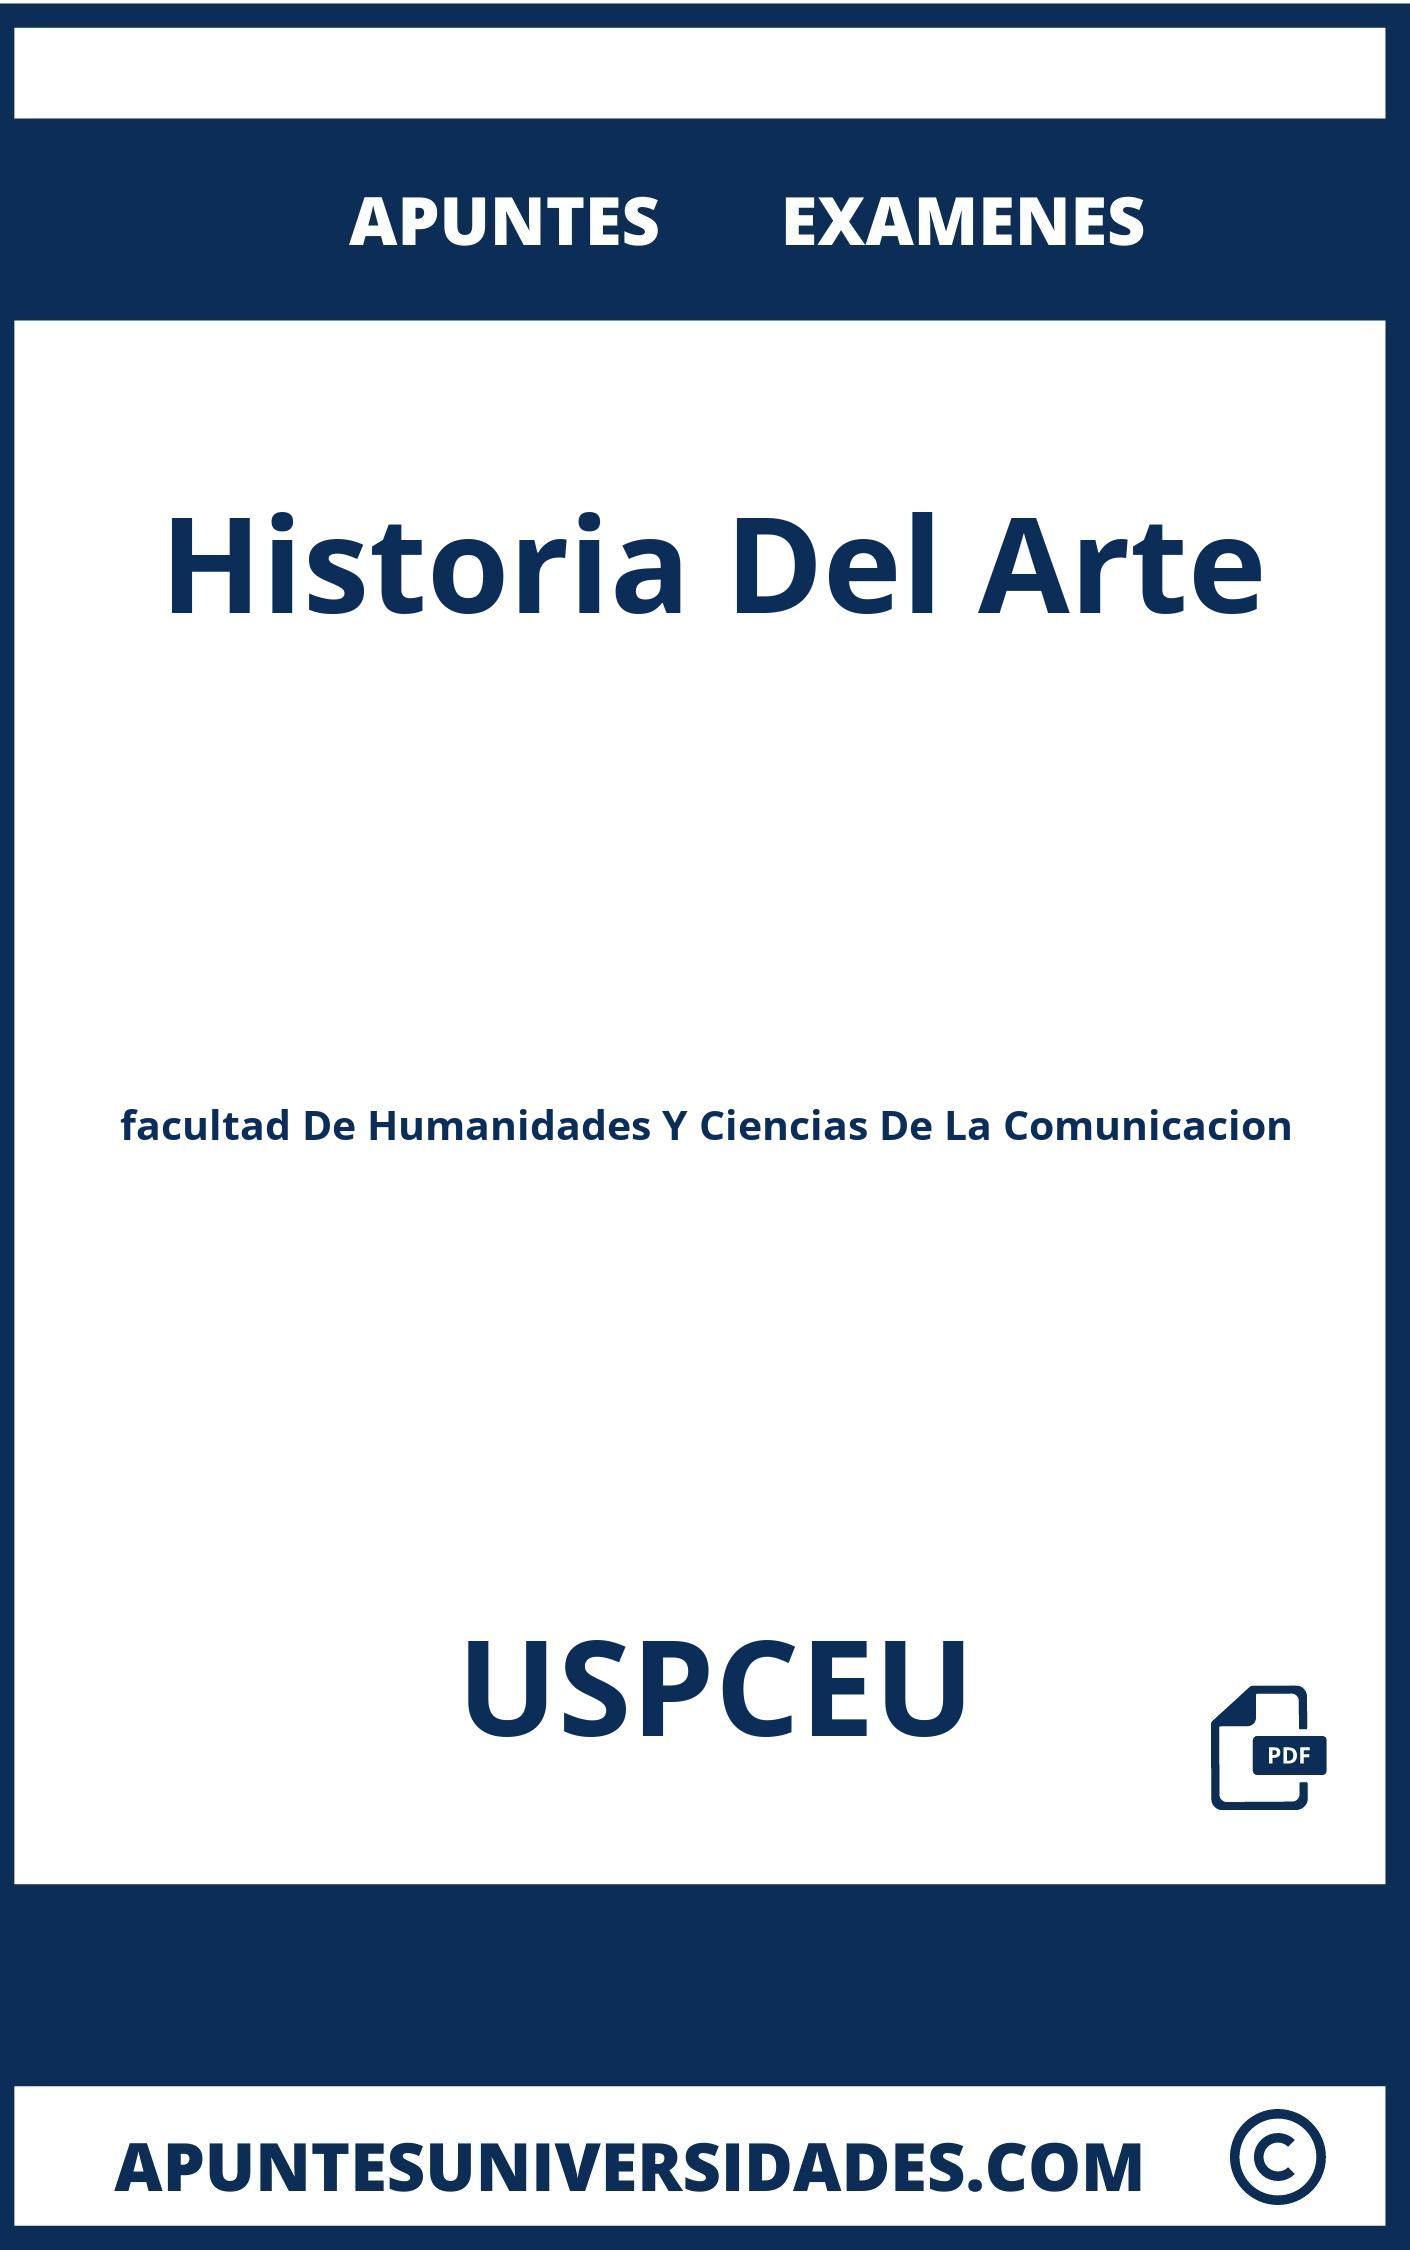 Apuntes y Examenes Historia Del Arte USPCEU